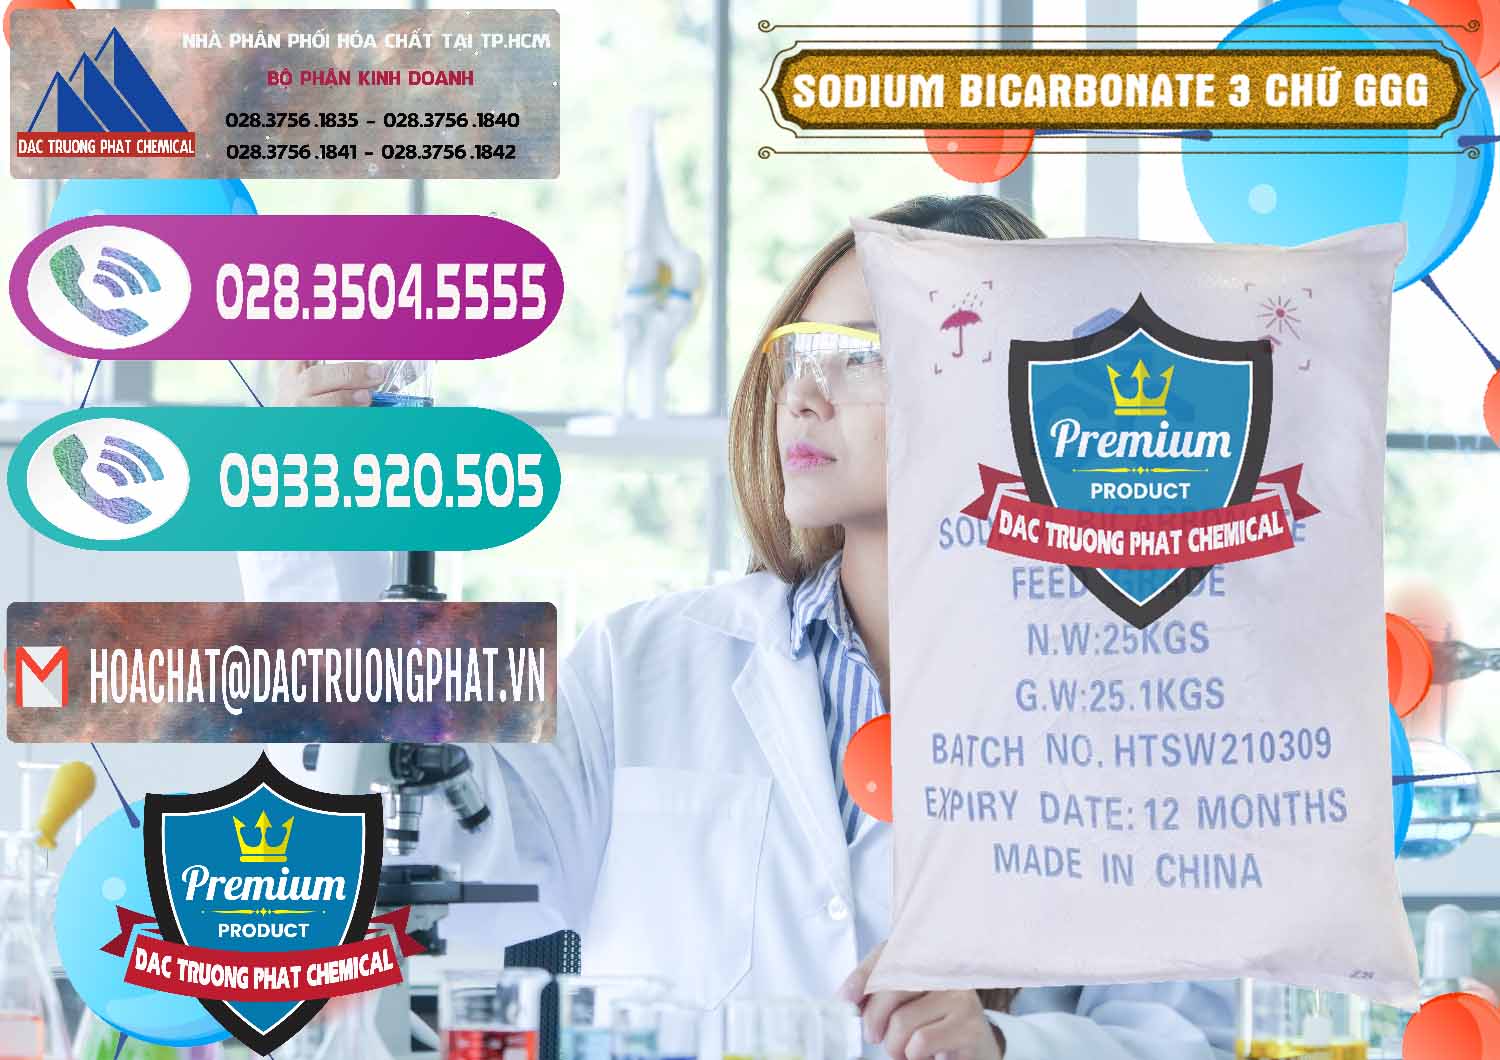 Chuyên bán ( cung cấp ) Sodium Bicarbonate – Bicar NaHCO3 Food Grade 3 Chữ GGG Trung Quốc China - 0259 - Cung cấp và bán hóa chất tại TP.HCM - hoachatxulynuoc.com